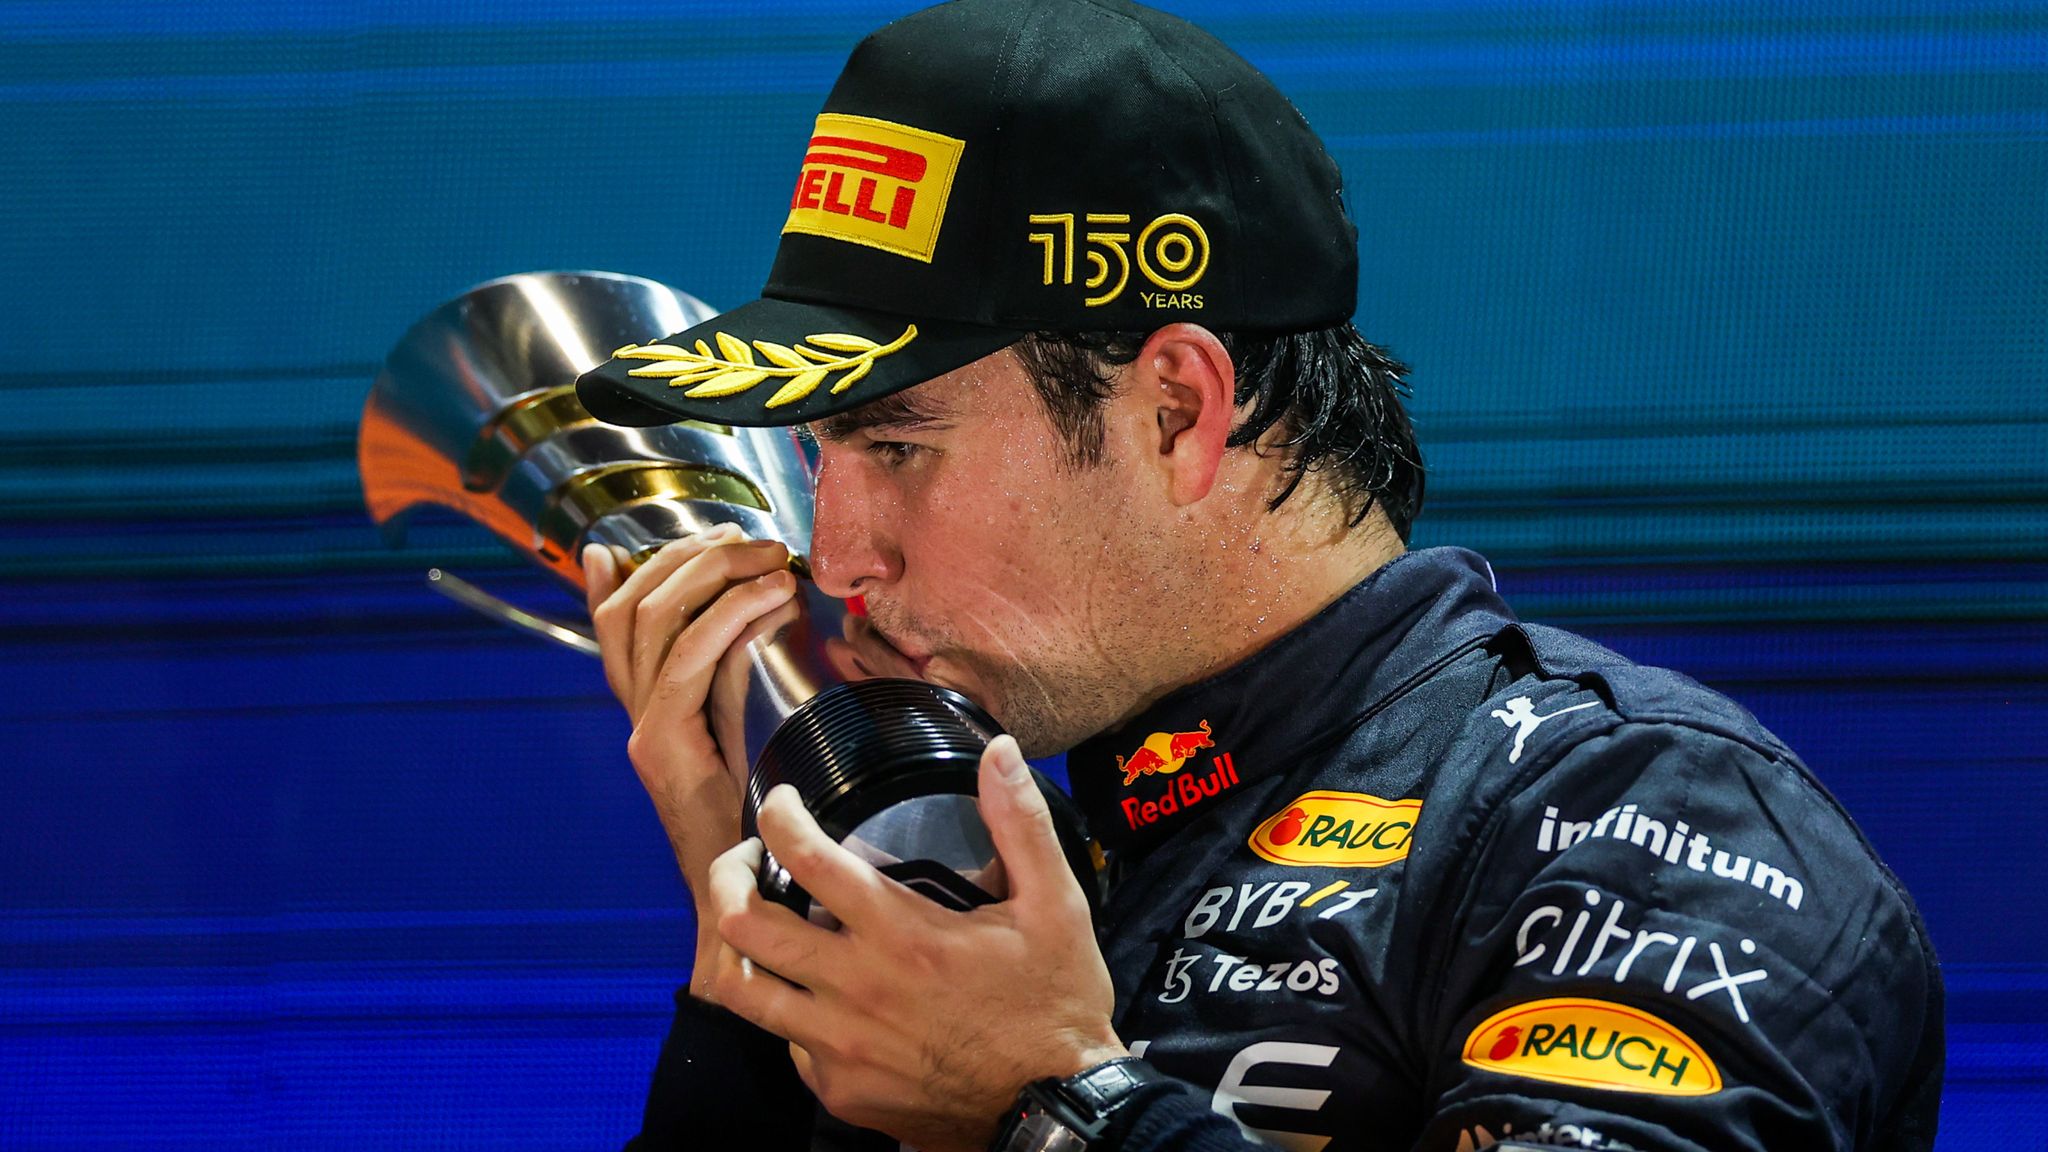 Kết quả GP Singapore: Sergio Perez thắng chặng, Max Verstappen chưa thể vô địch sớm